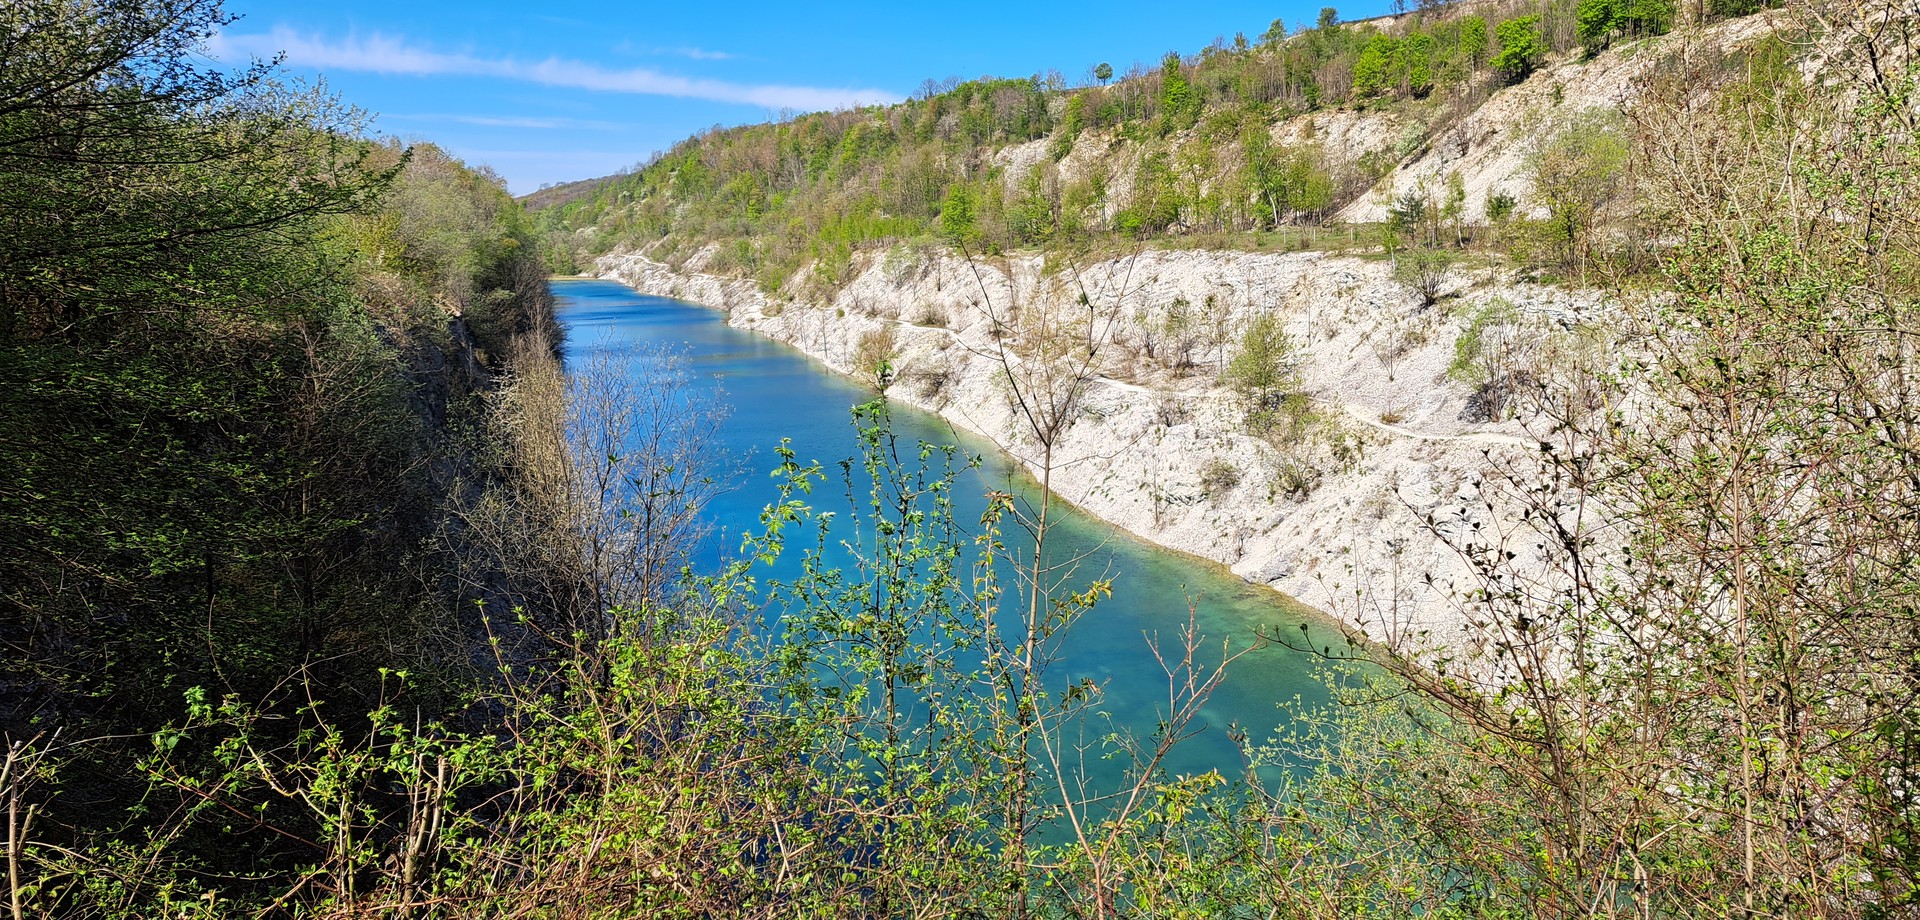 Ein türkisfarbener See zwischen steilen Kalksteinwänden und Bäumen und Sträuchern